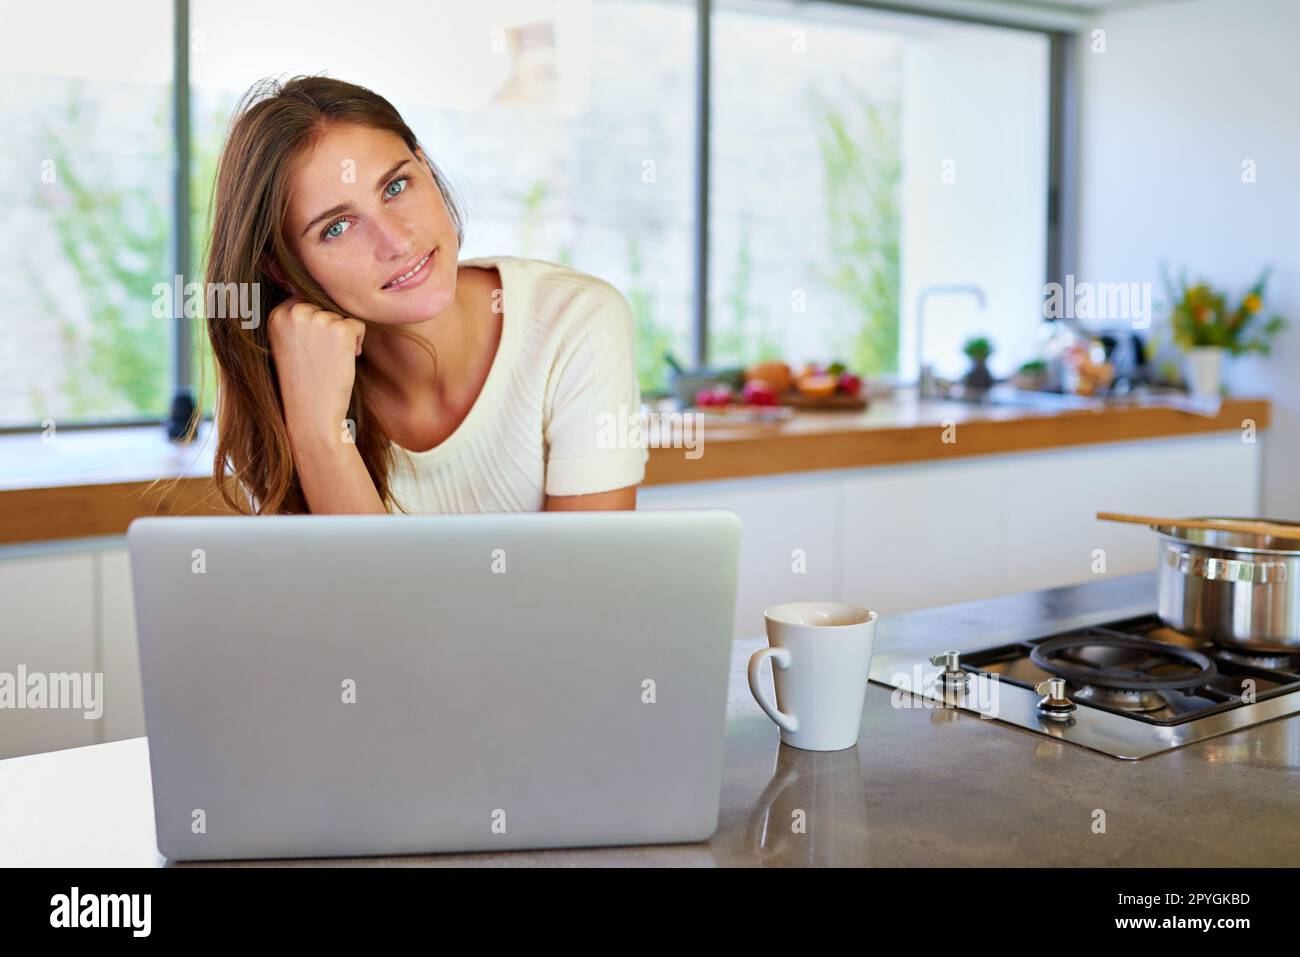 Mein Rezeptbuch ist online. Porträt einer attraktiven jungen Frau, die ihren Laptop in der Küche benutzt. Stockfoto